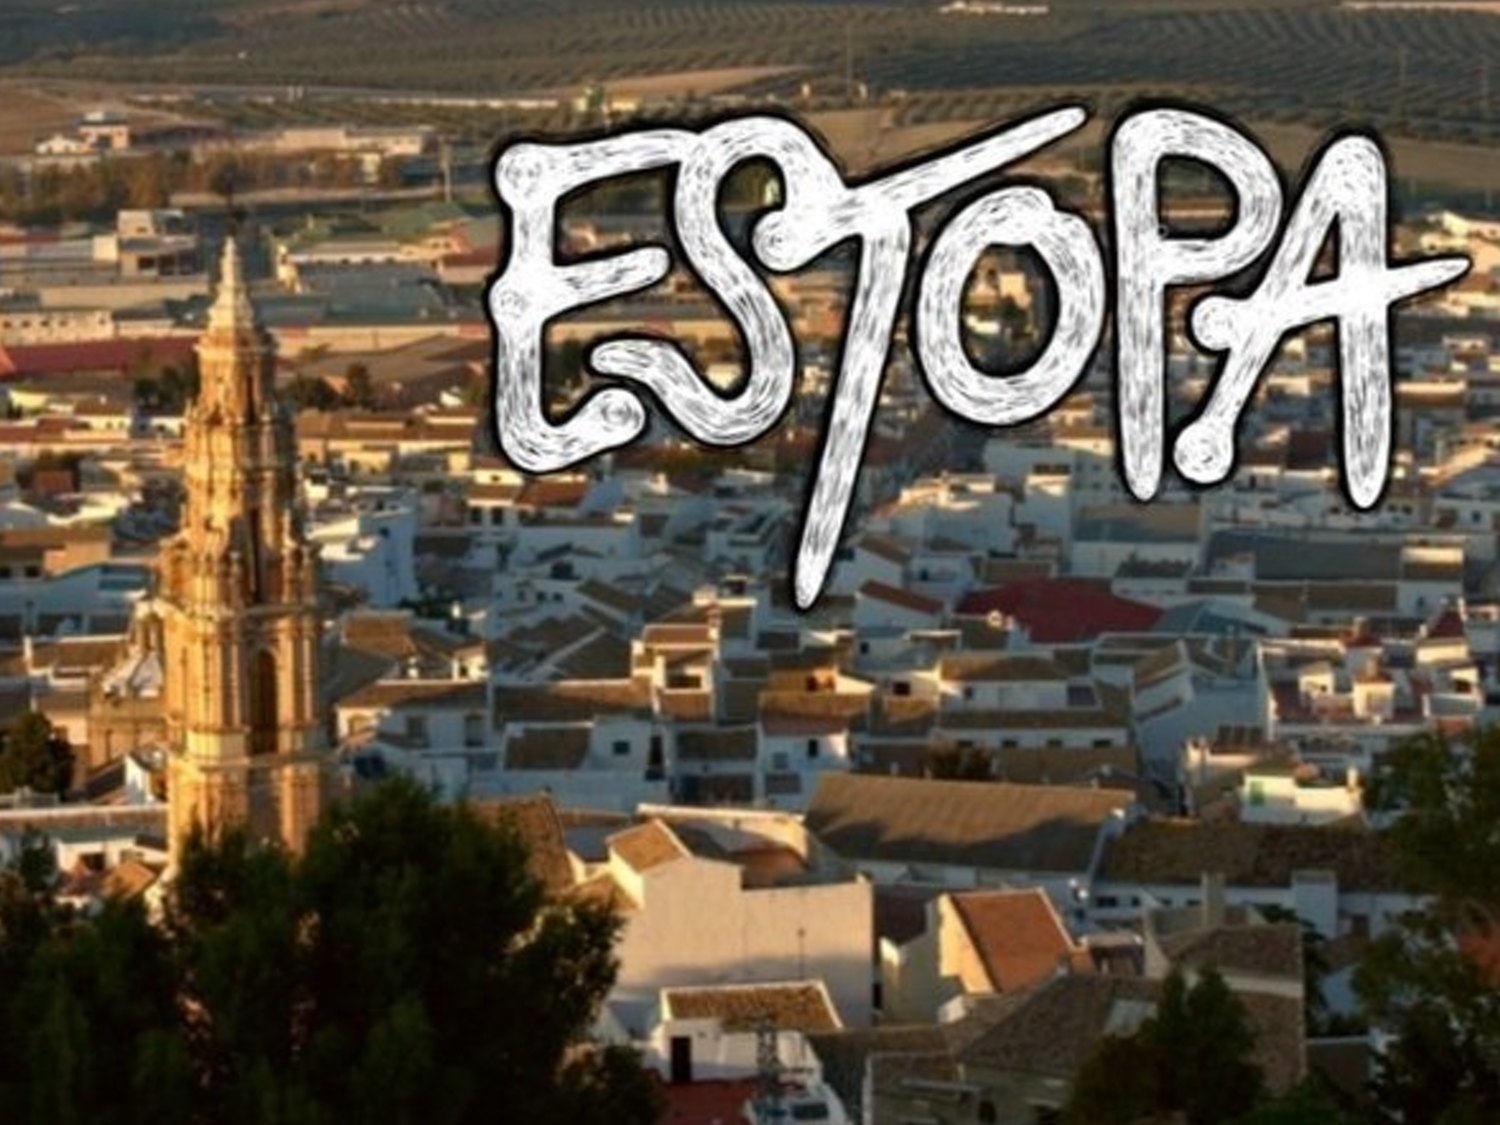 De Estepa a Estopa: la propuesta de cambio de nombre para atraer turistas al pueblo